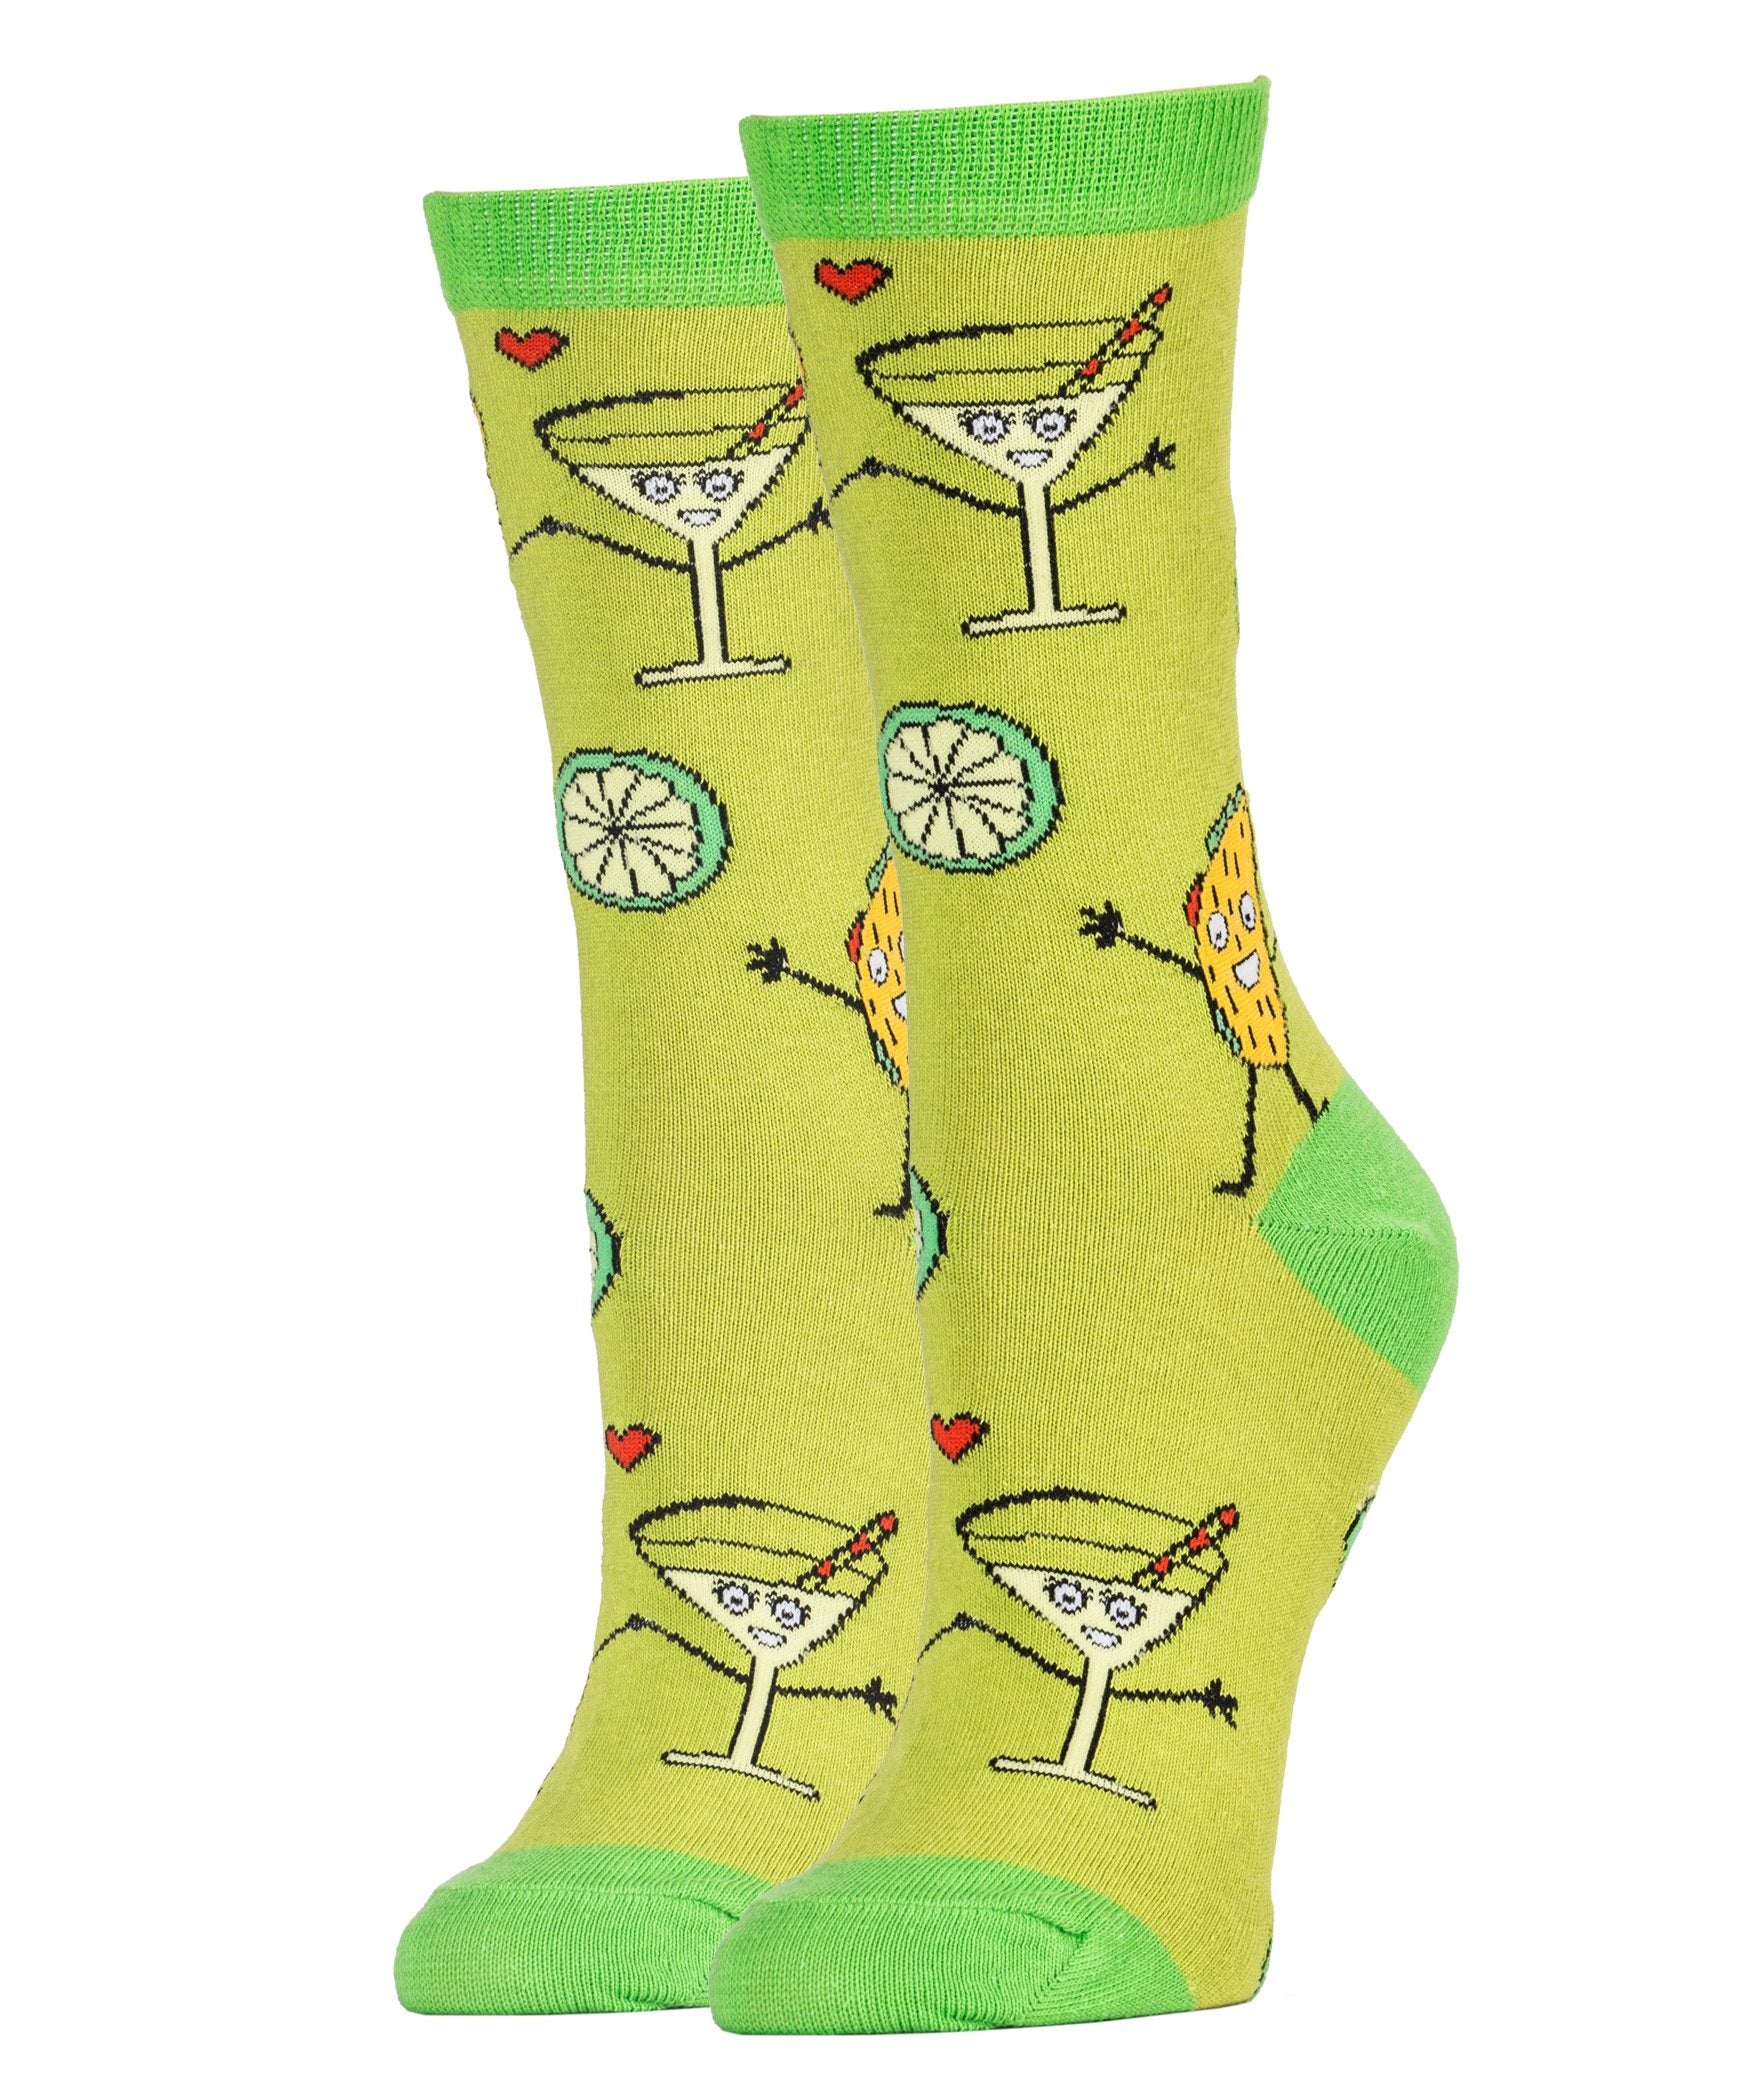 Happy Hour Socks | Novelty Crew Socks For Women